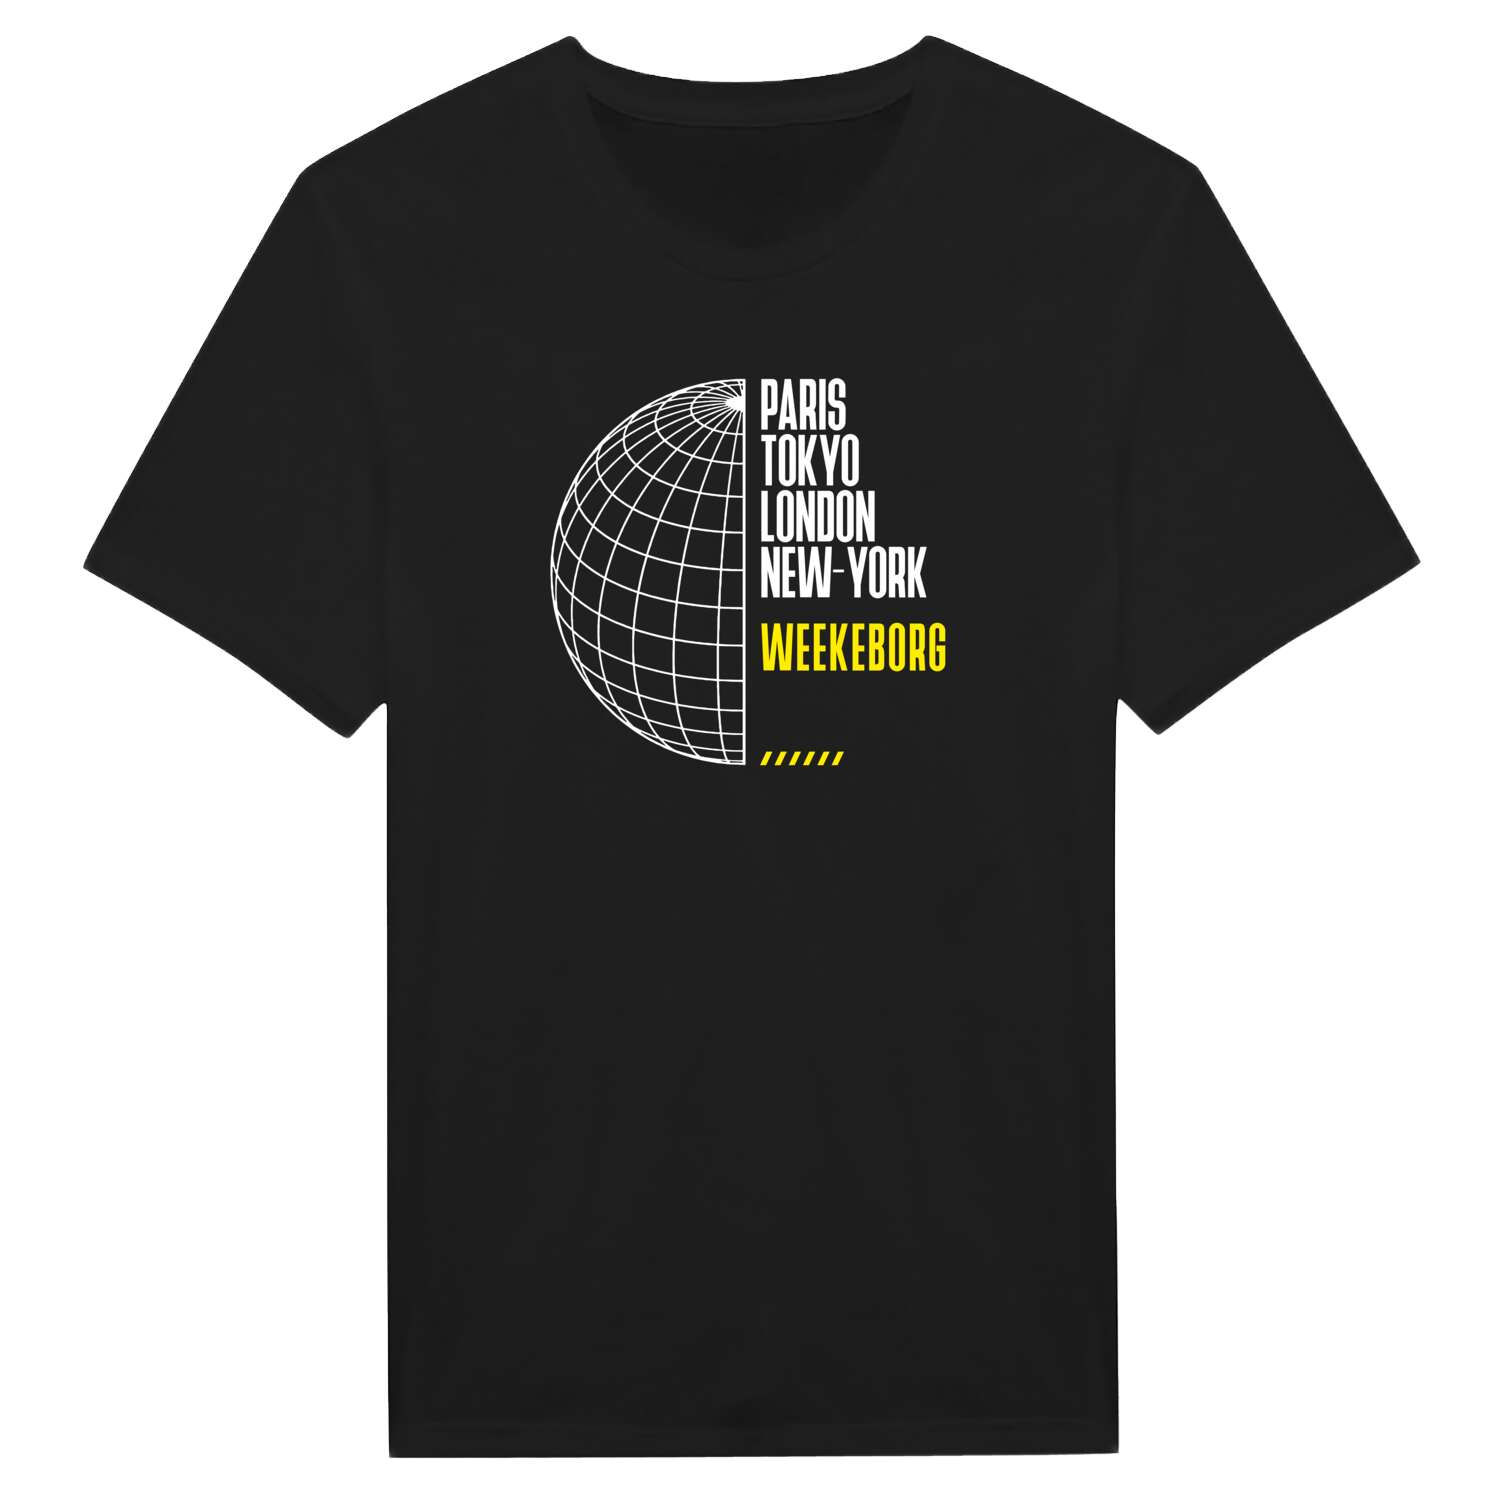 Weekeborg T-Shirt »Paris Tokyo London«